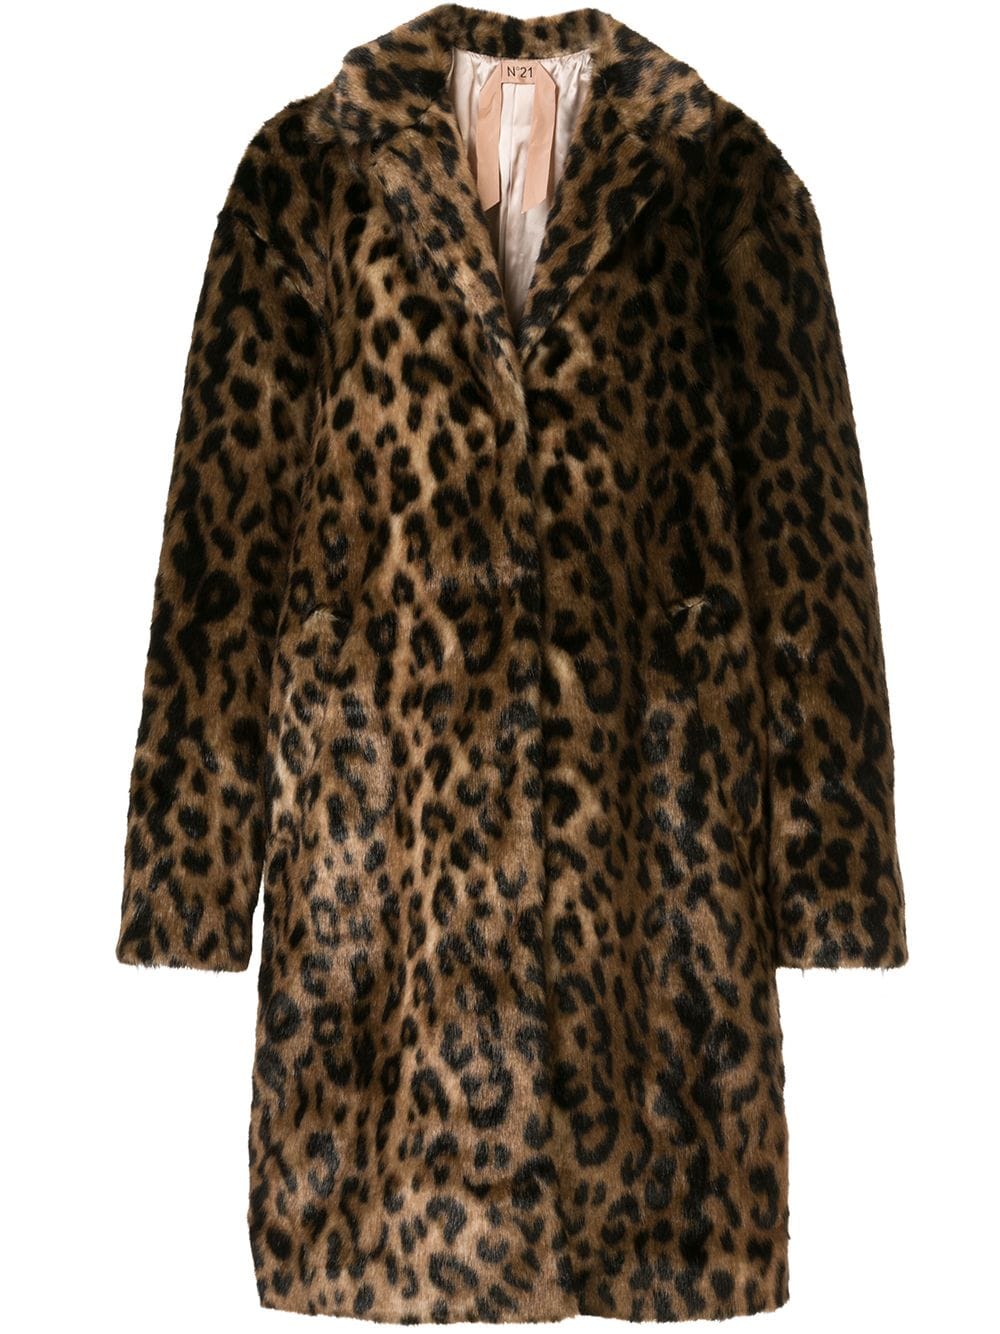 фото Nº21 пальто оверсайз с леопардовым принтом